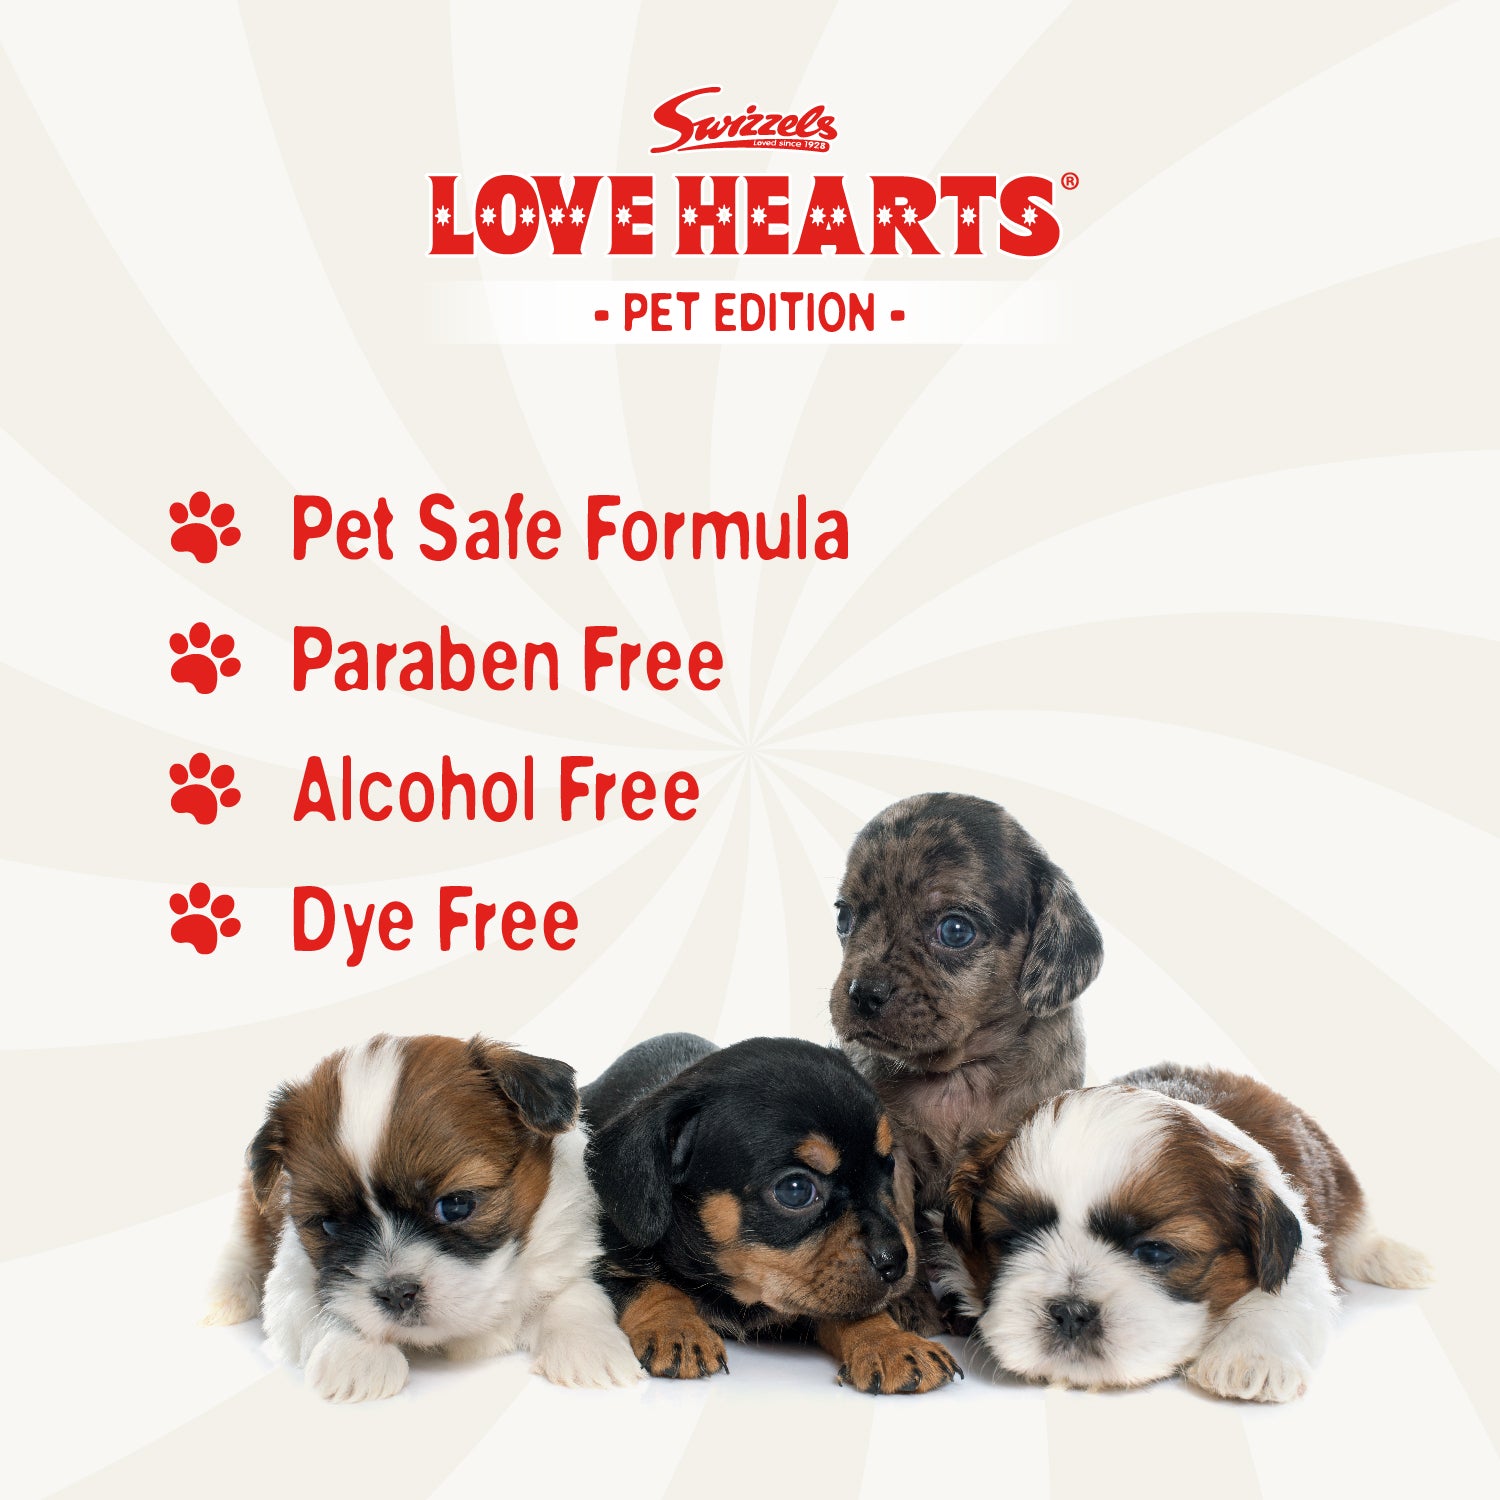 Swizzels Love Hearts - Puppy Shampoo - 2 x 250ml